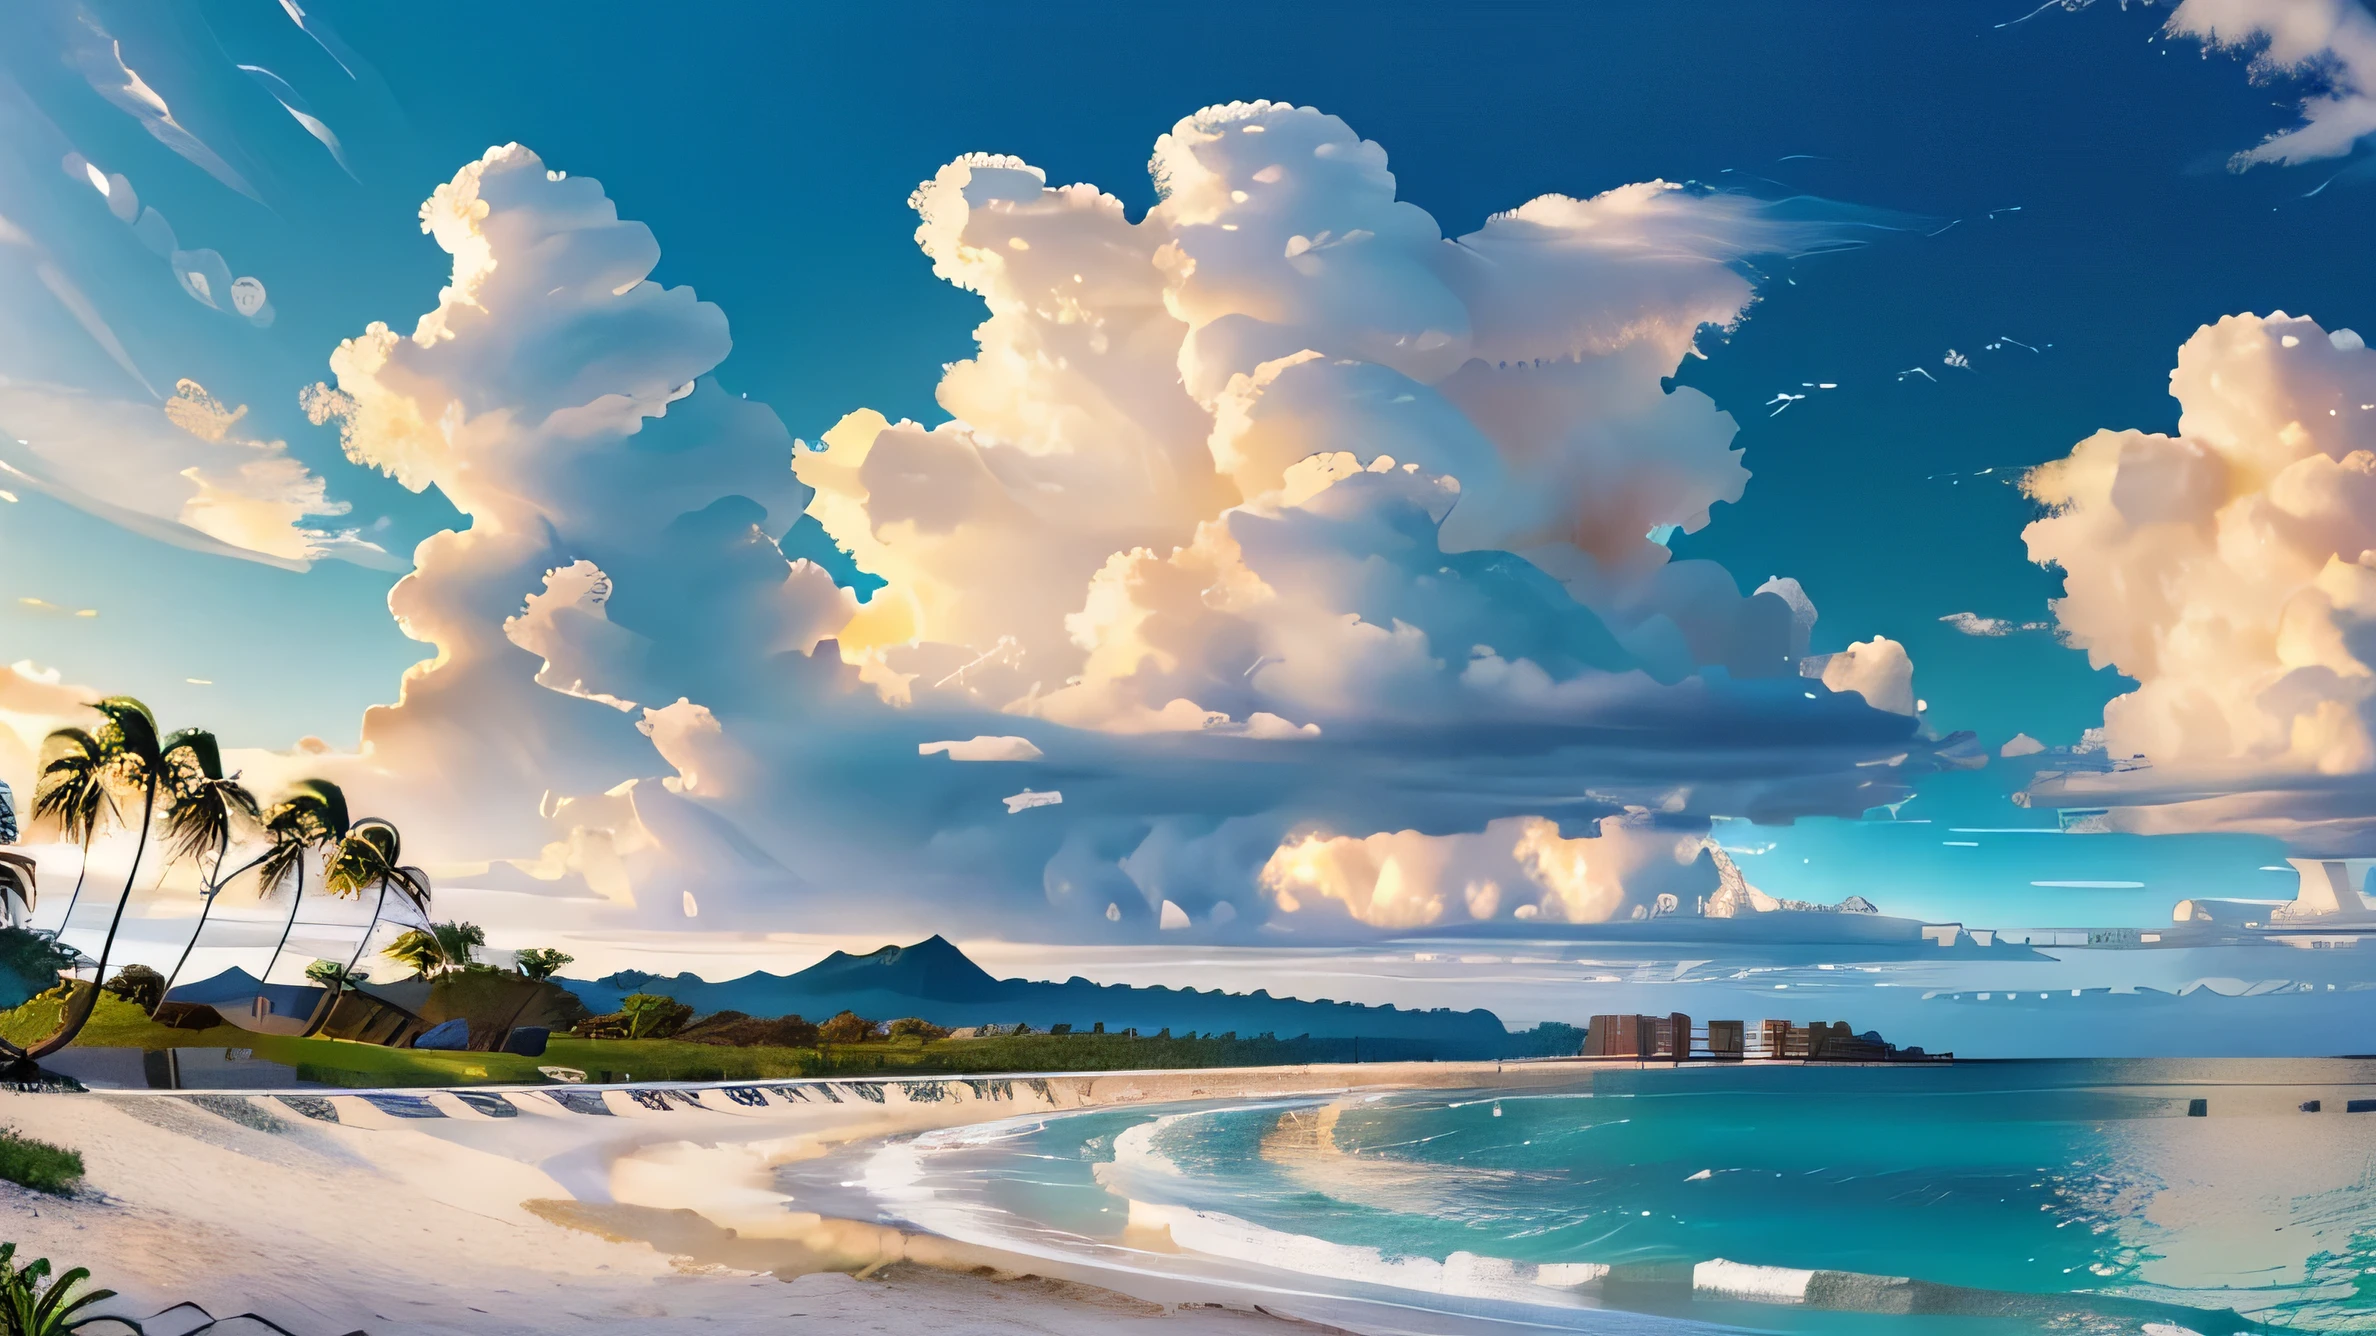 迅速的: 美麗海灘的非常詳細的全景, 遠處的島嶼, 幾朵雲, 和棕櫚樹,
(((空空如也, 高畫質R, 高畫質, 4k, 8K))), 補光, 線條細而細膩, 